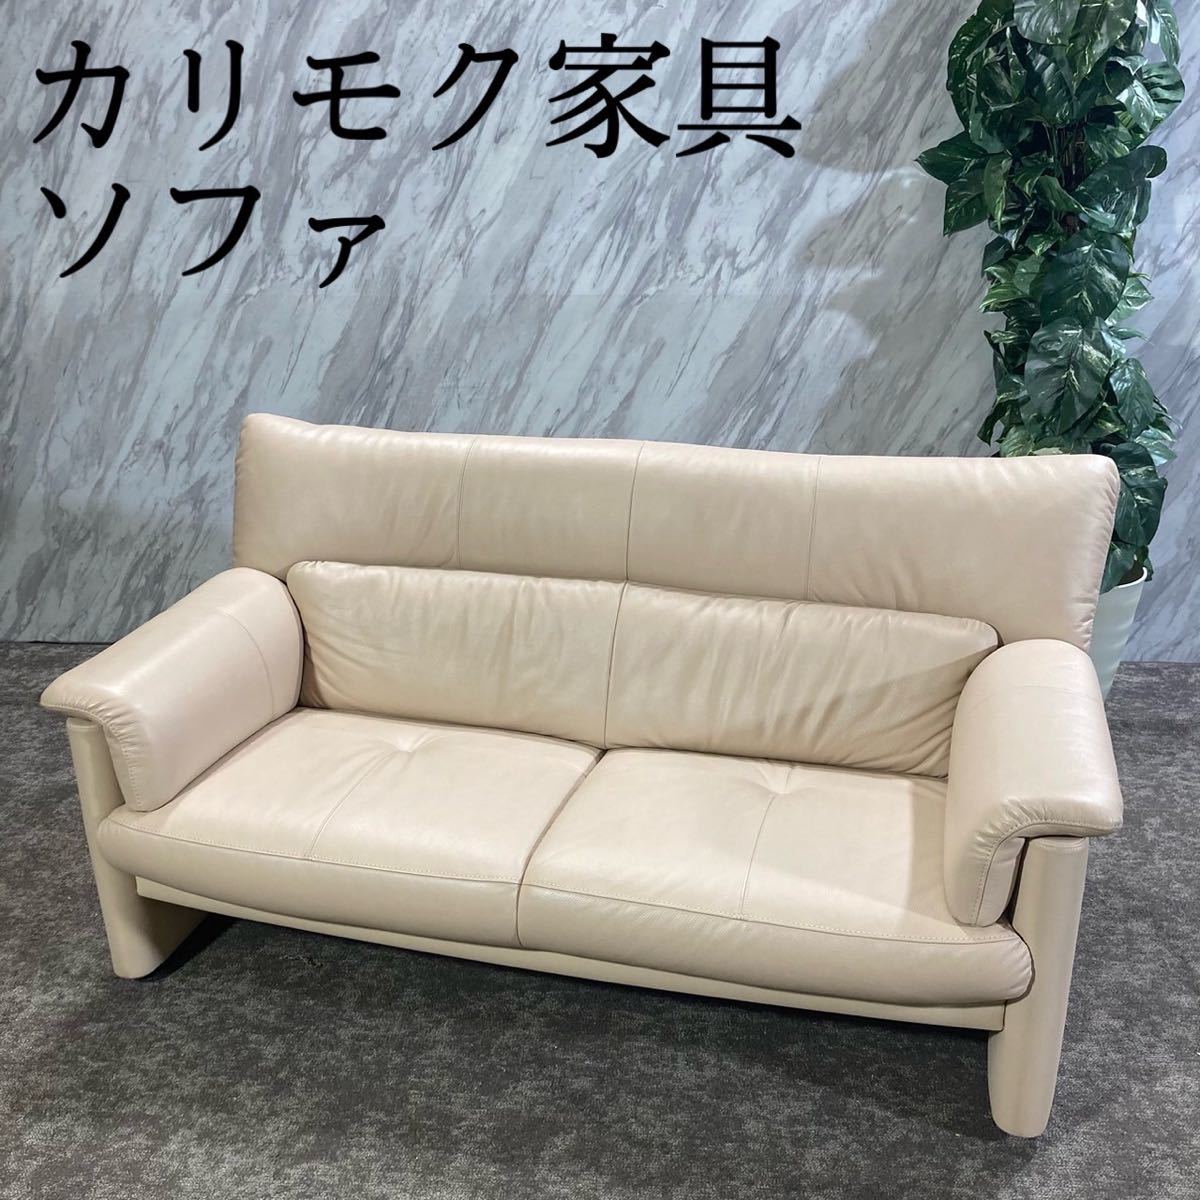  Karimoku Karimoku Furniture chita-noZ1811 диван мебель living N508